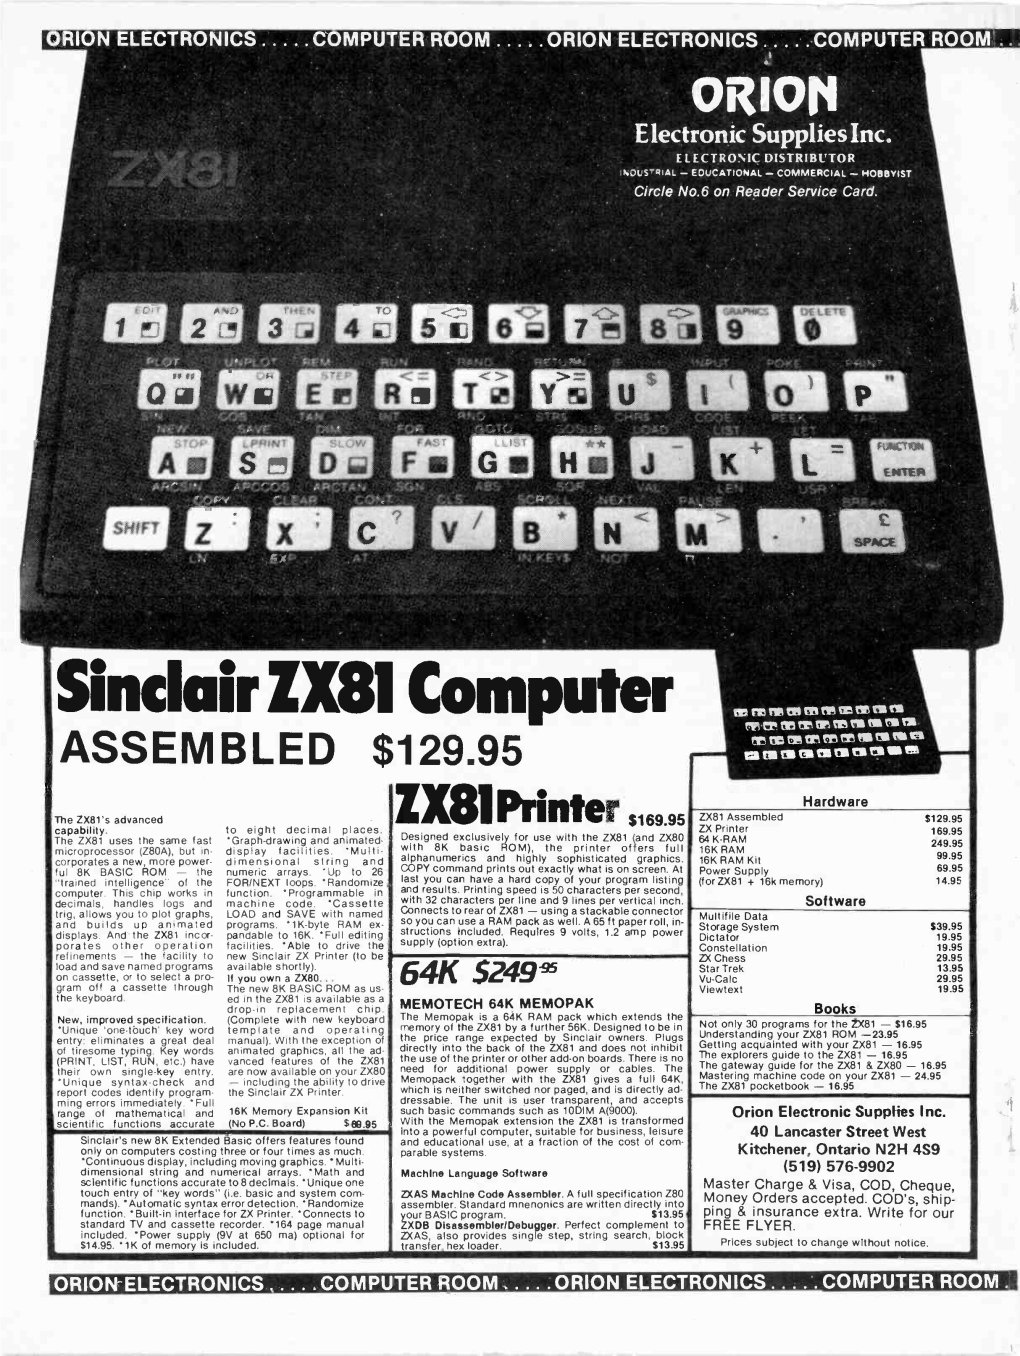 Sinclair ZX81 Computer Naf Nia IVIS VAS Mt 4315 Tir Le Re, Tr Tr UPS Nes Till IS CS VII Rr Re Di WM TS II ASSEMBLED $129.95 Tit QS MCI Ea Ell